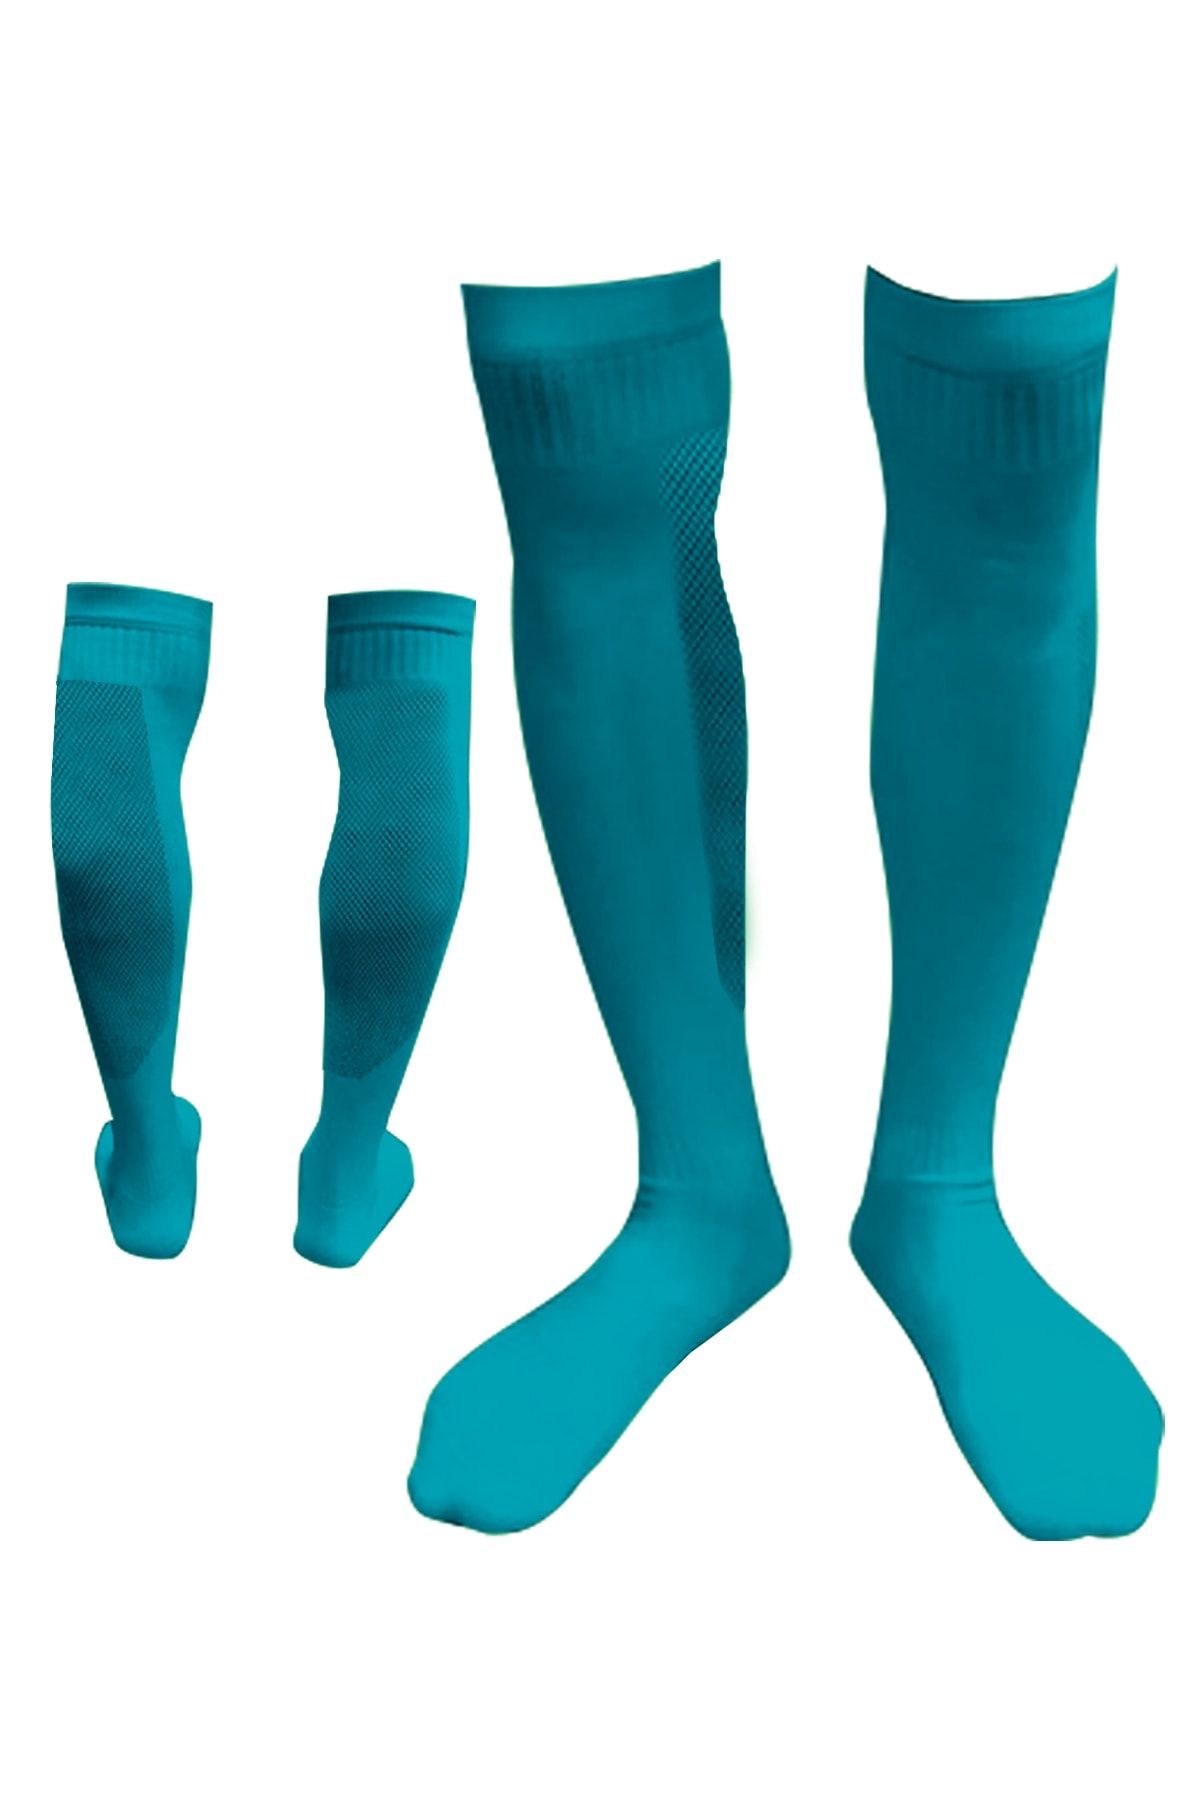 Vee Turkuaz Mavi Profesyonel Fileli Futbol Çorabı